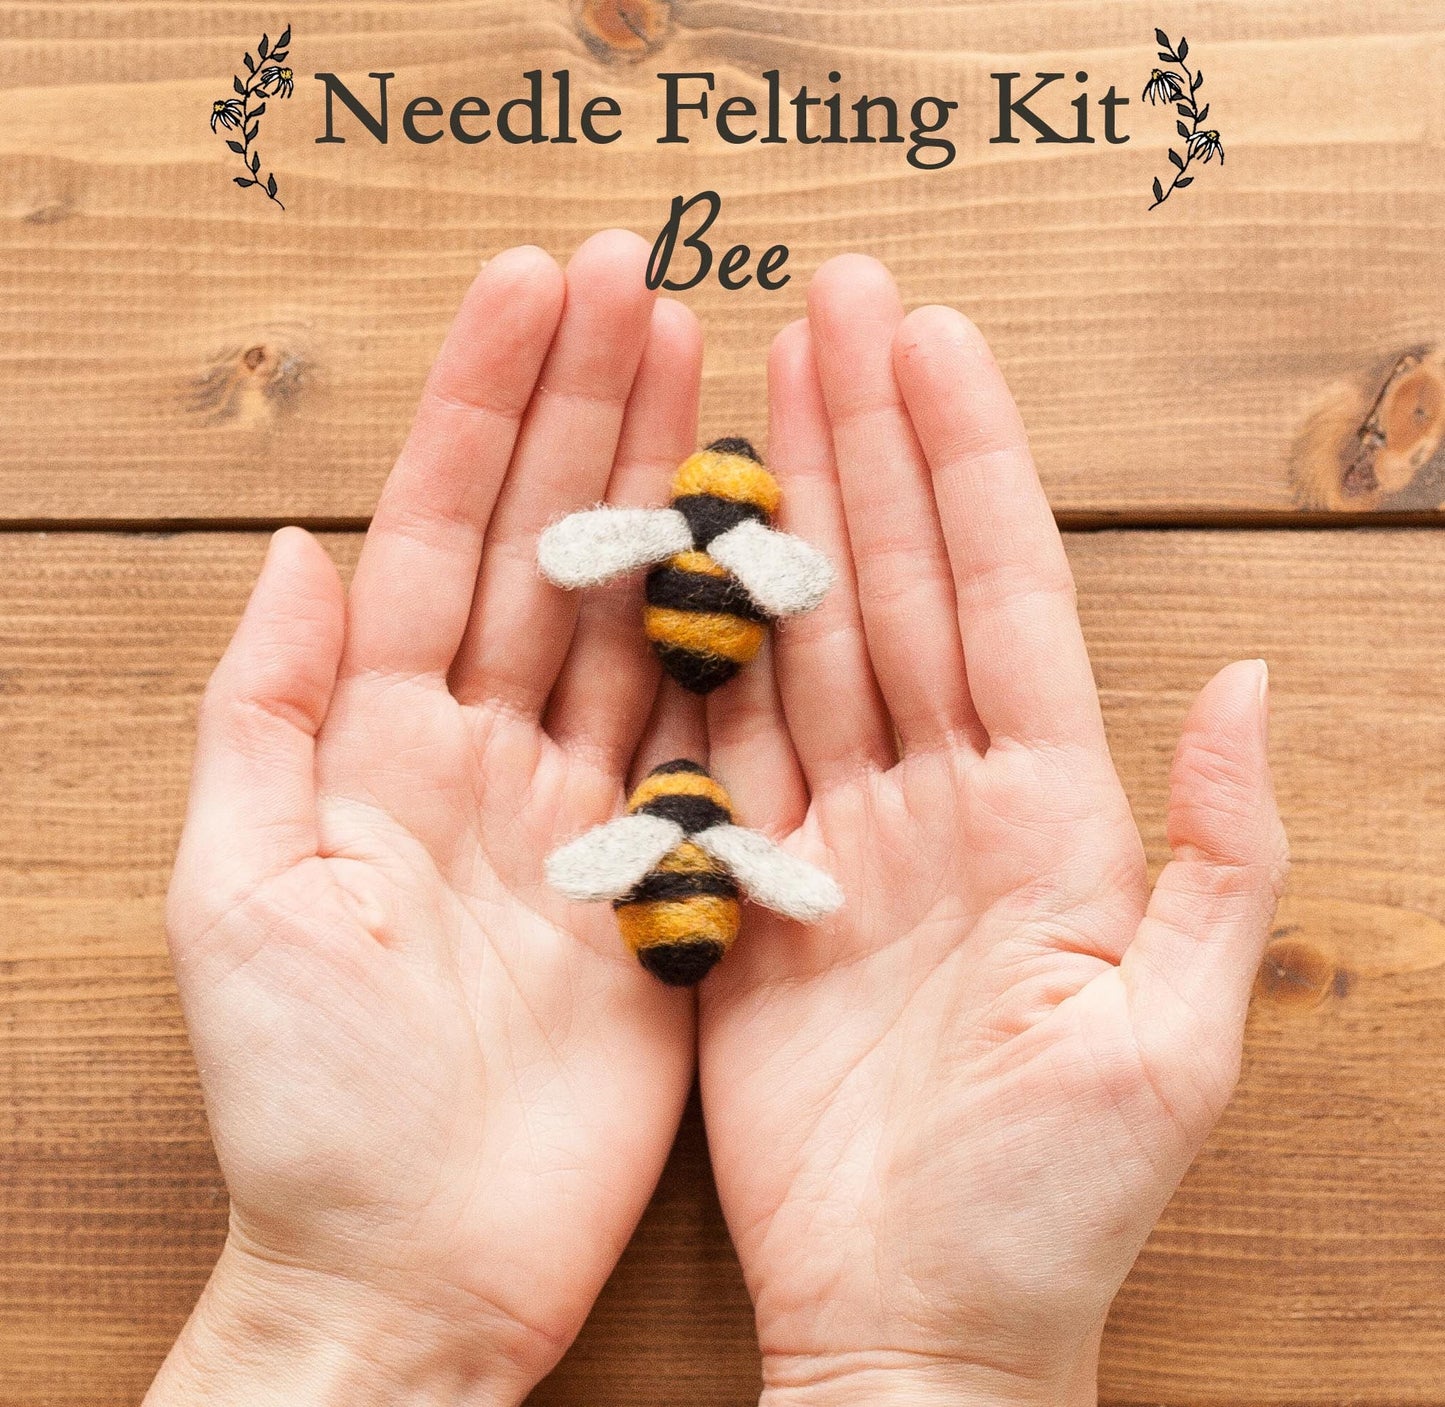 Bees - Needle Felting Kit - Beginner